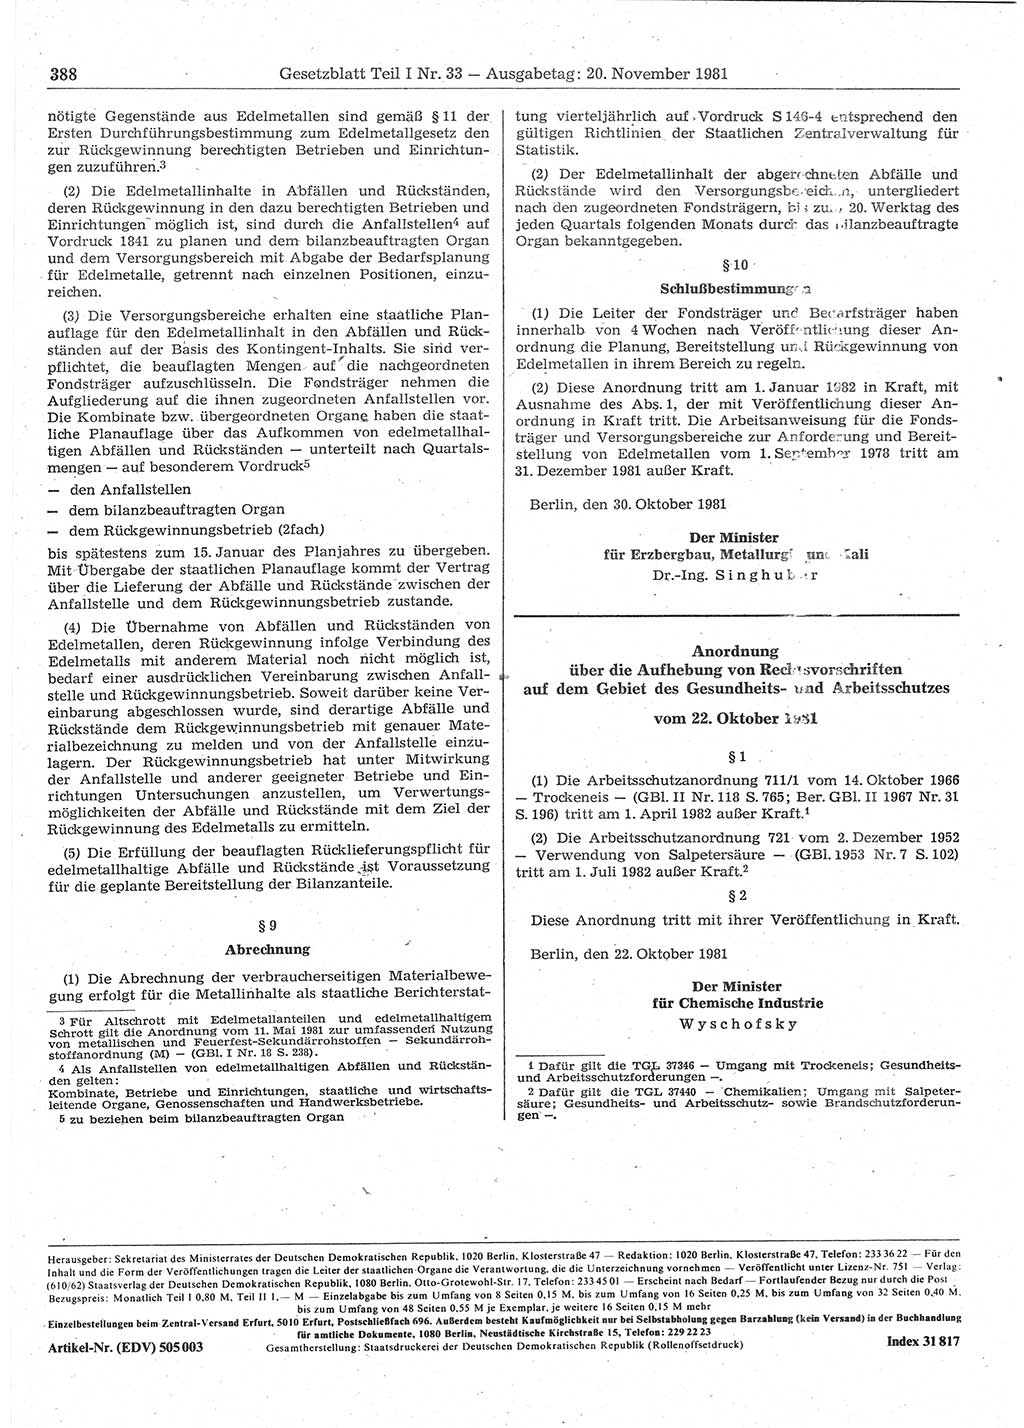 Gesetzblatt (GBl.) der Deutschen Demokratischen Republik (DDR) Teil Ⅰ 1981, Seite 388 (GBl. DDR Ⅰ 1981, S. 388)